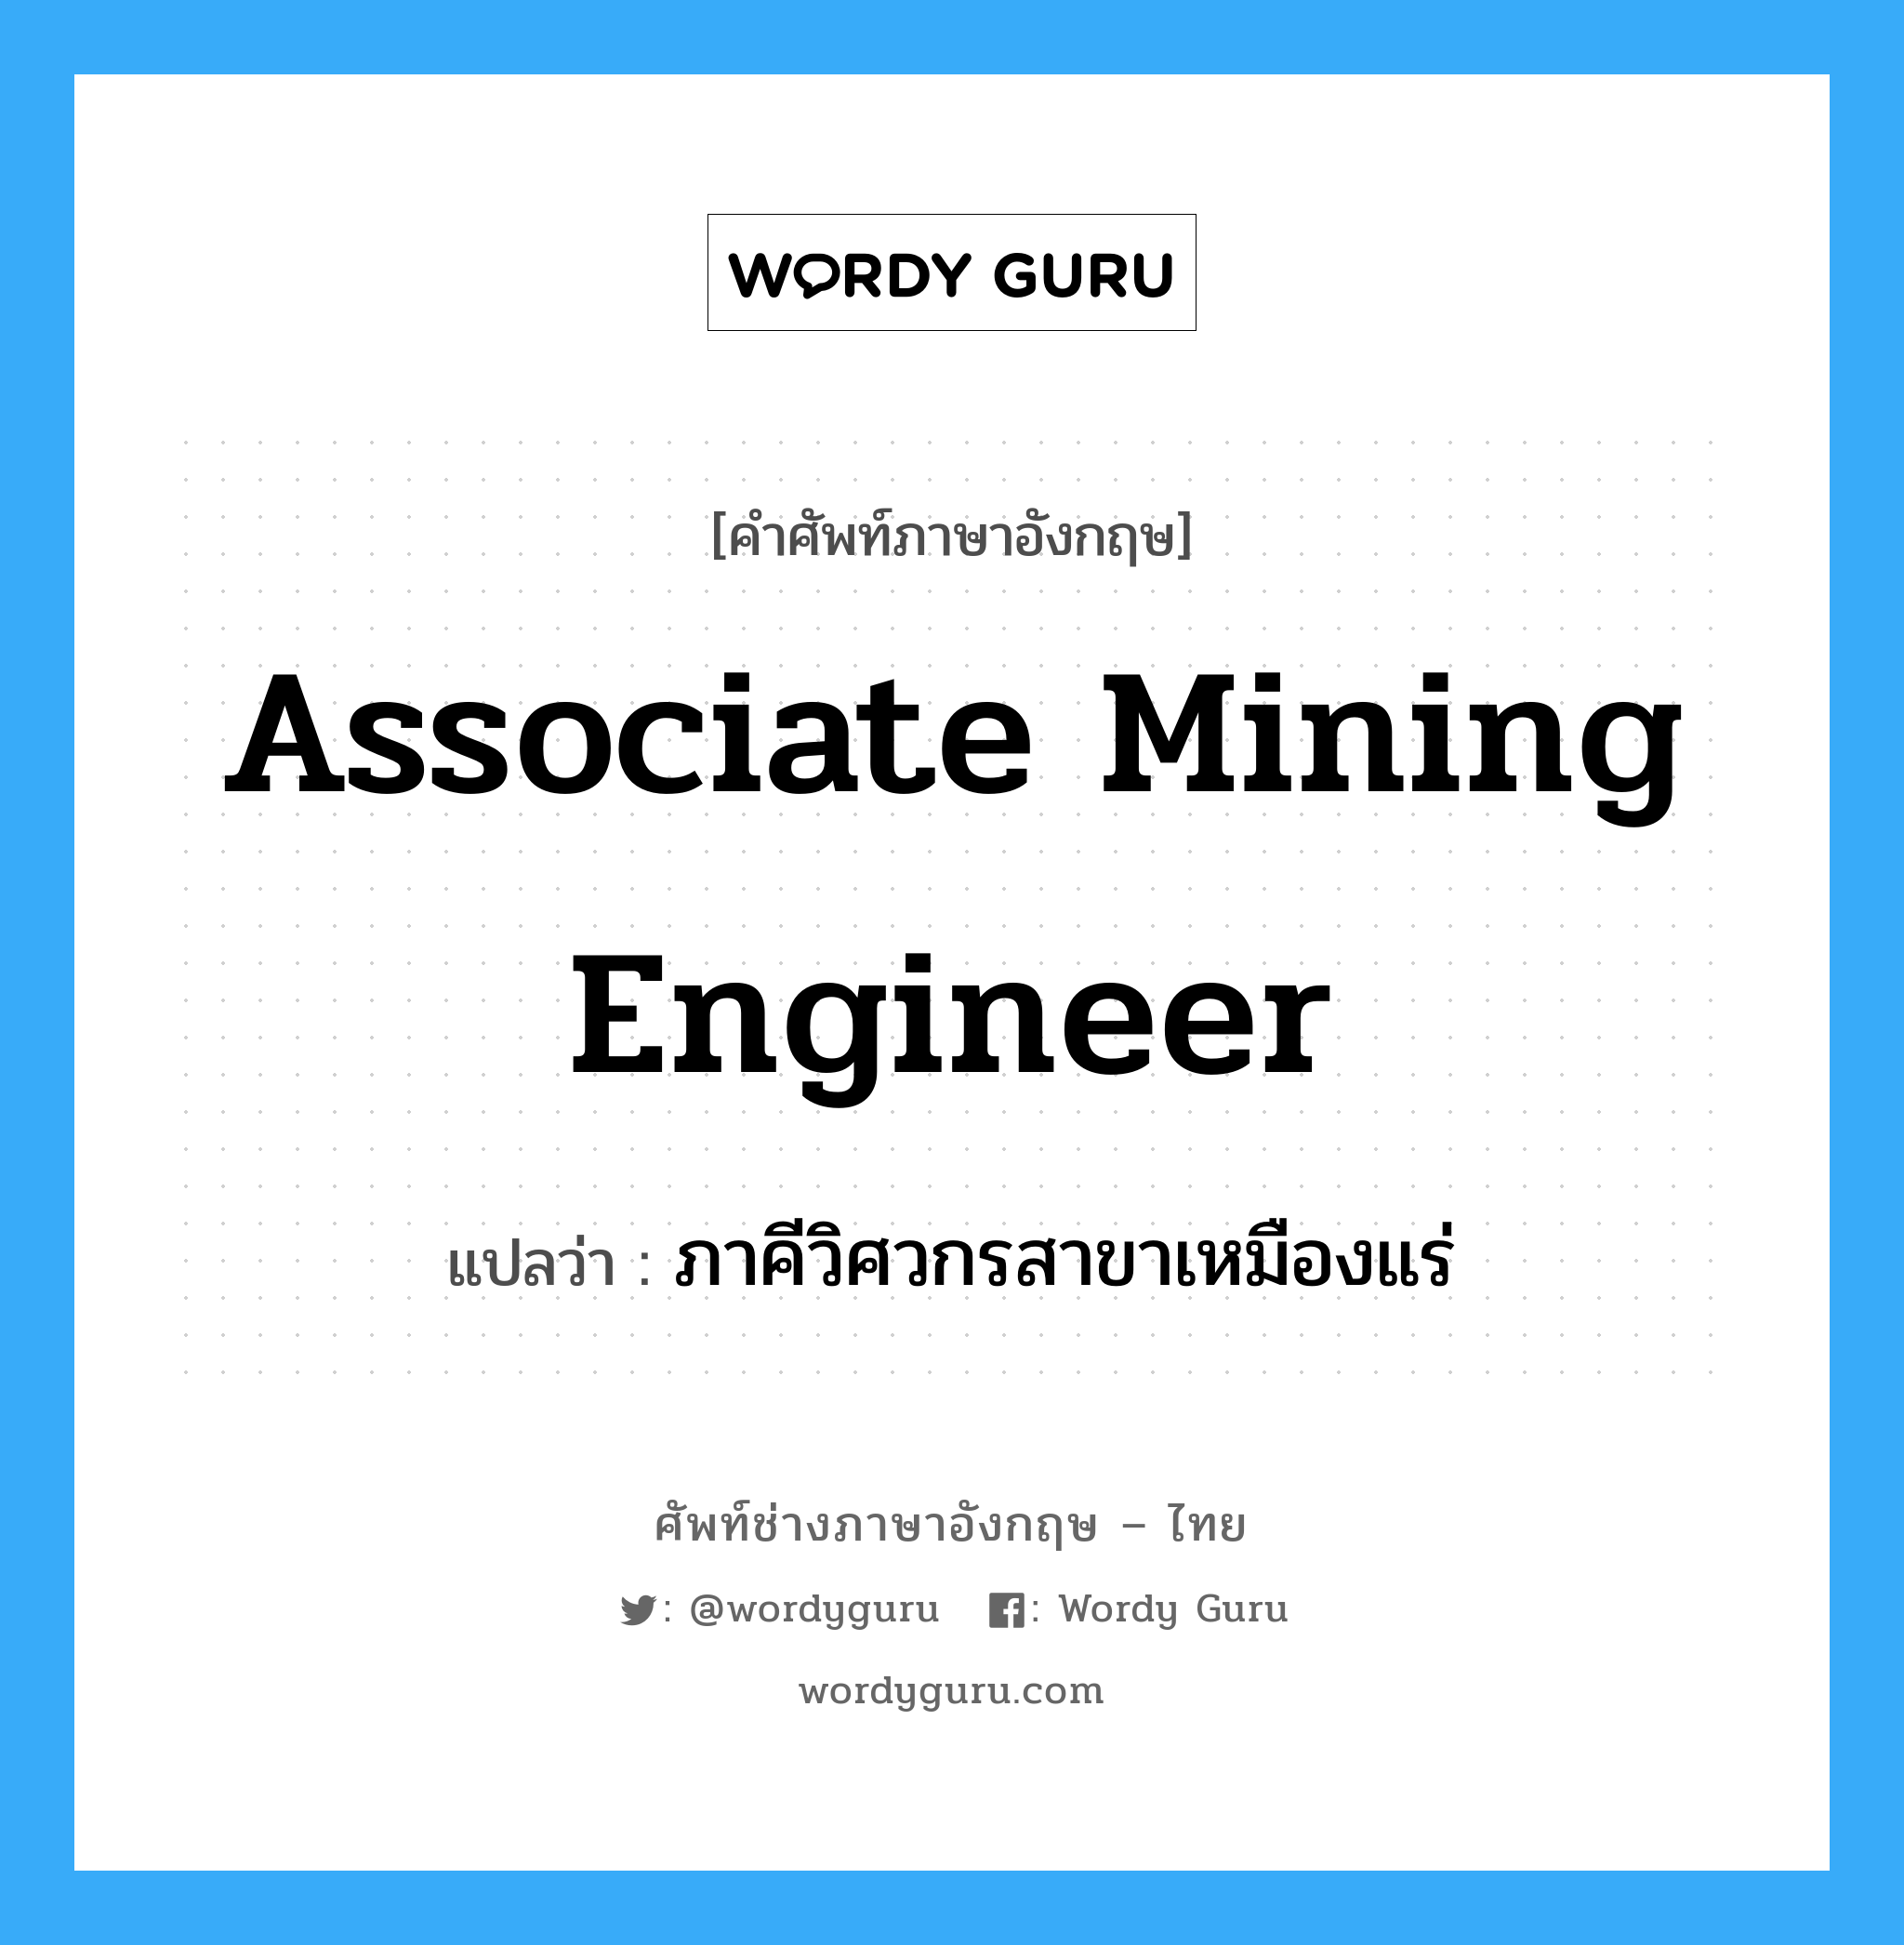 ภาคีวิศวกรสาขาเหมืองแร่ ภาษาอังกฤษ?, คำศัพท์ช่างภาษาอังกฤษ - ไทย ภาคีวิศวกรสาขาเหมืองแร่ คำศัพท์ภาษาอังกฤษ ภาคีวิศวกรสาขาเหมืองแร่ แปลว่า Associate Mining Engineer